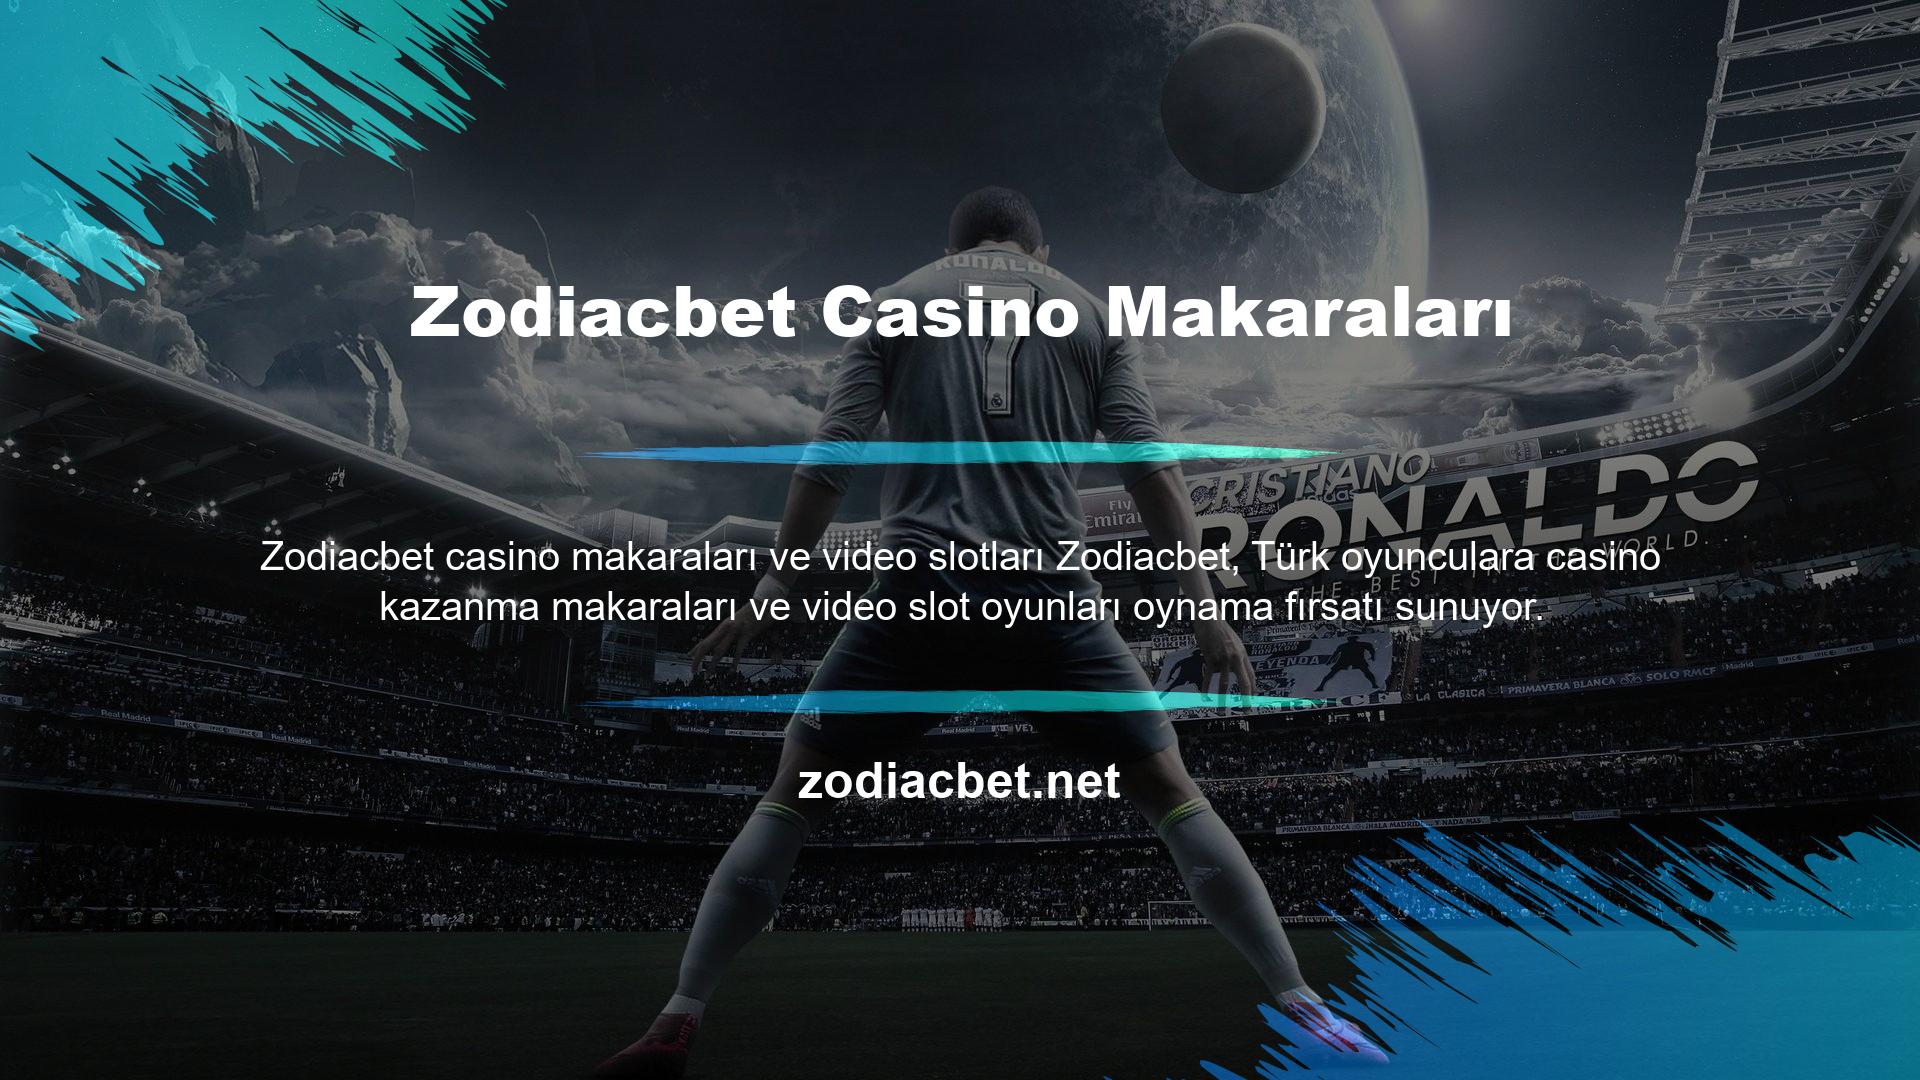 Zodiacbet ayrıca canlı casino hizmeti de sunmaktadır